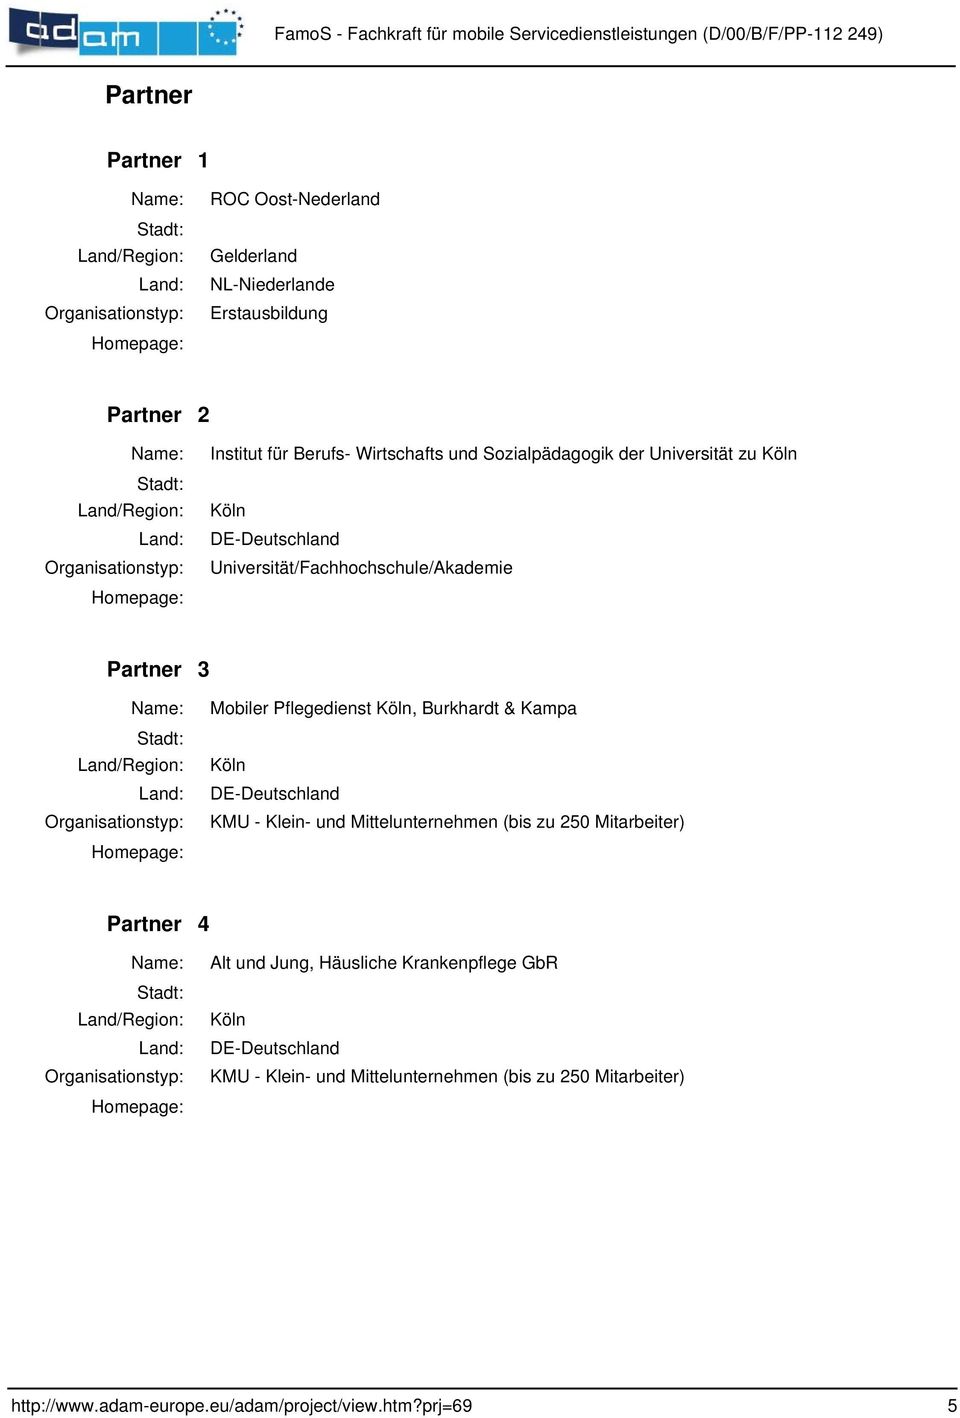 Mobiler Pflegedienst Köln, Burkhardt & Kampa Köln KMU - Klein- und Mittelunternehmen (bis zu 250 Mitarbeiter)